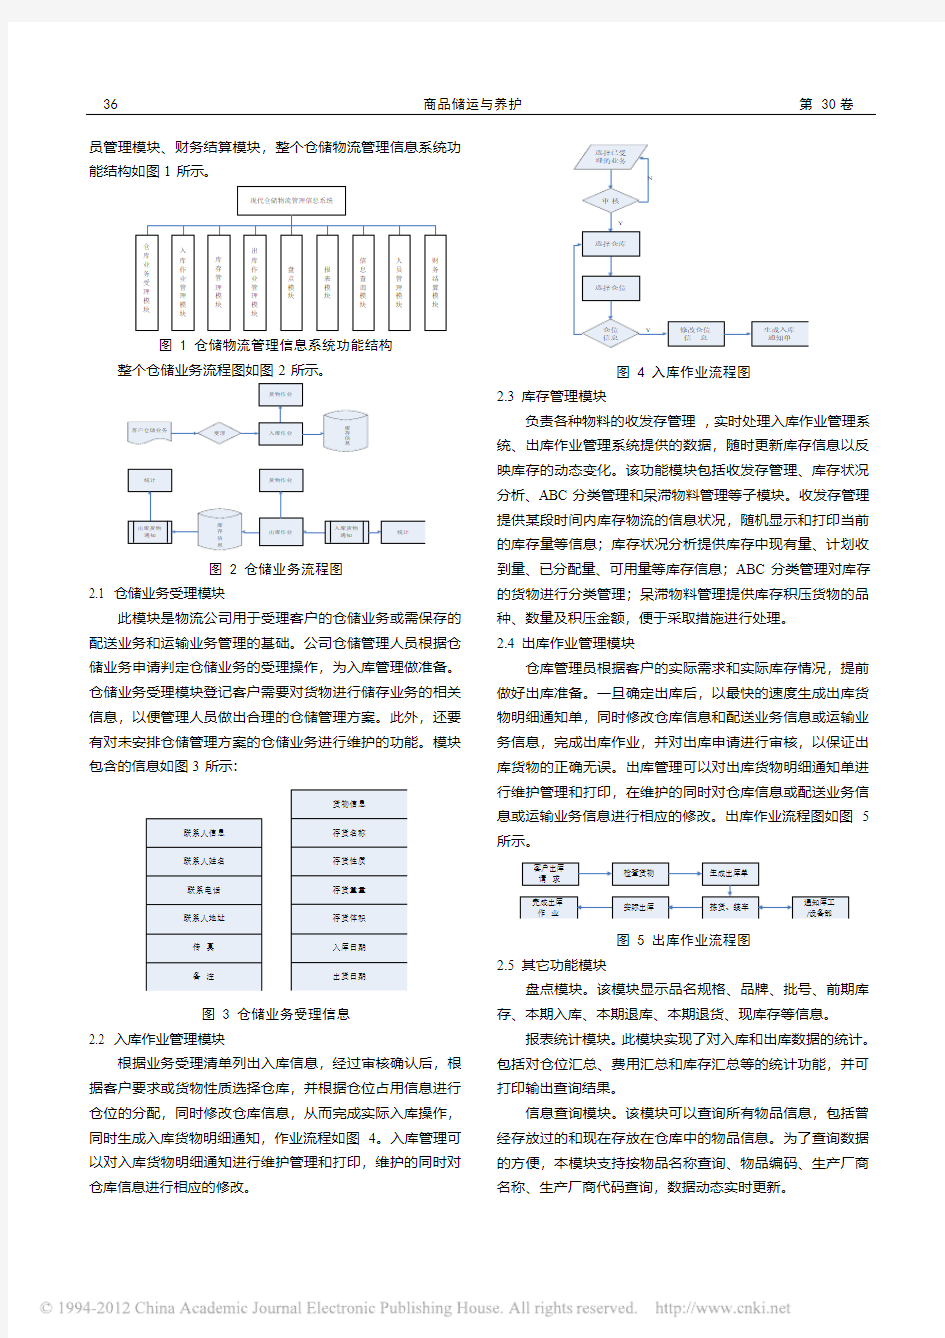 现代仓储物流管理信息系统分析与设计_曹彬